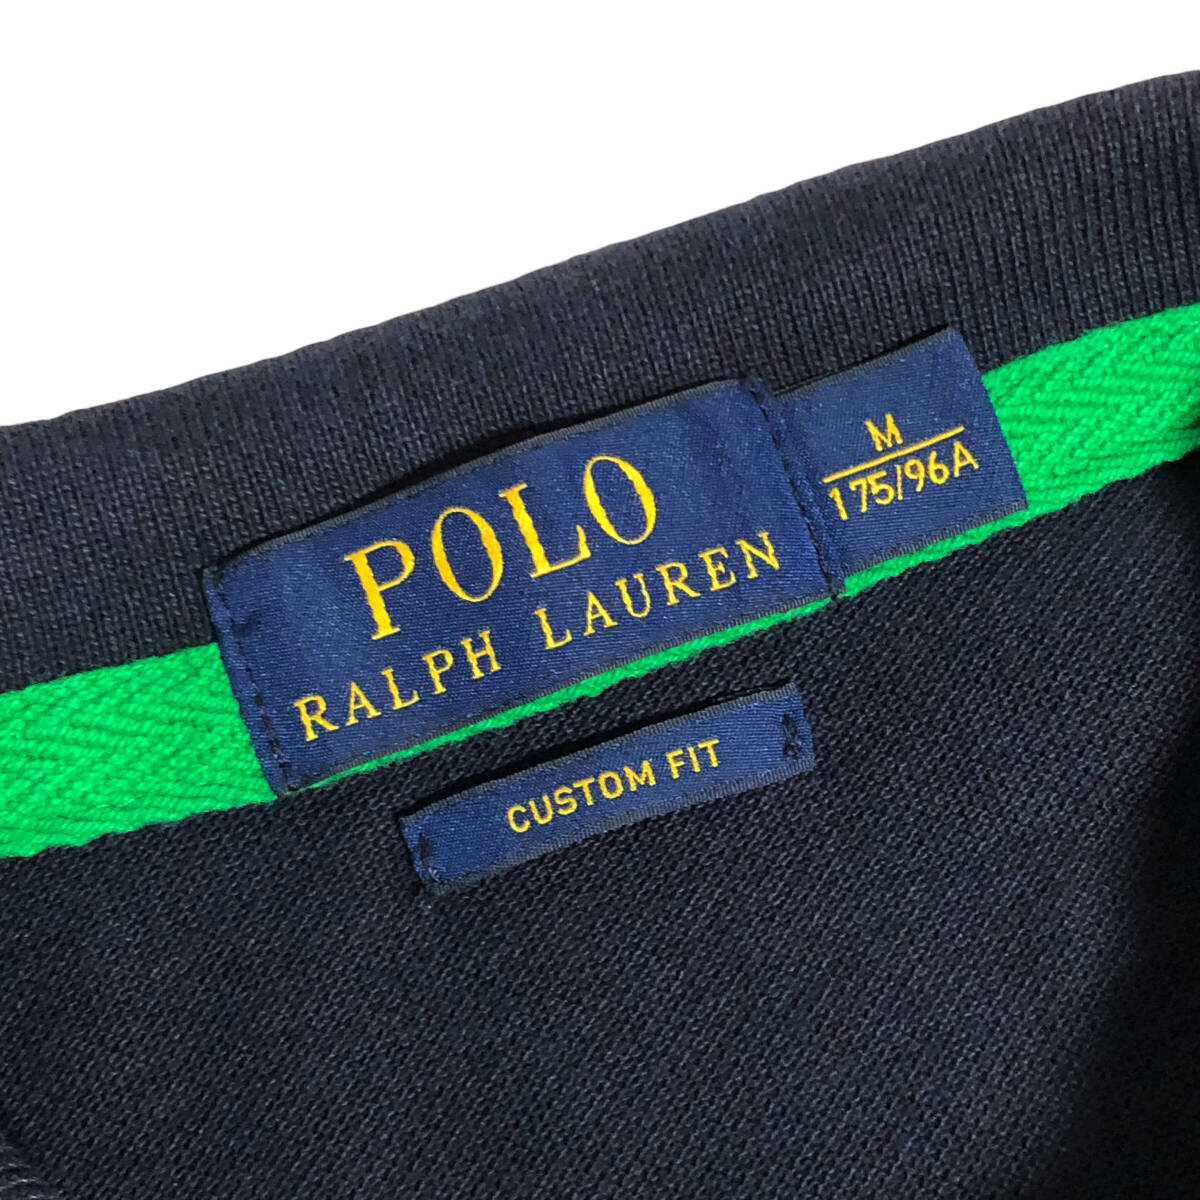 Polo Ralph Lauren ポロラルフローレン ポロシャツ ビッグポニー ナンバリング 半袖 M ネイビー CUSTOM FIT メンズ A25_画像7